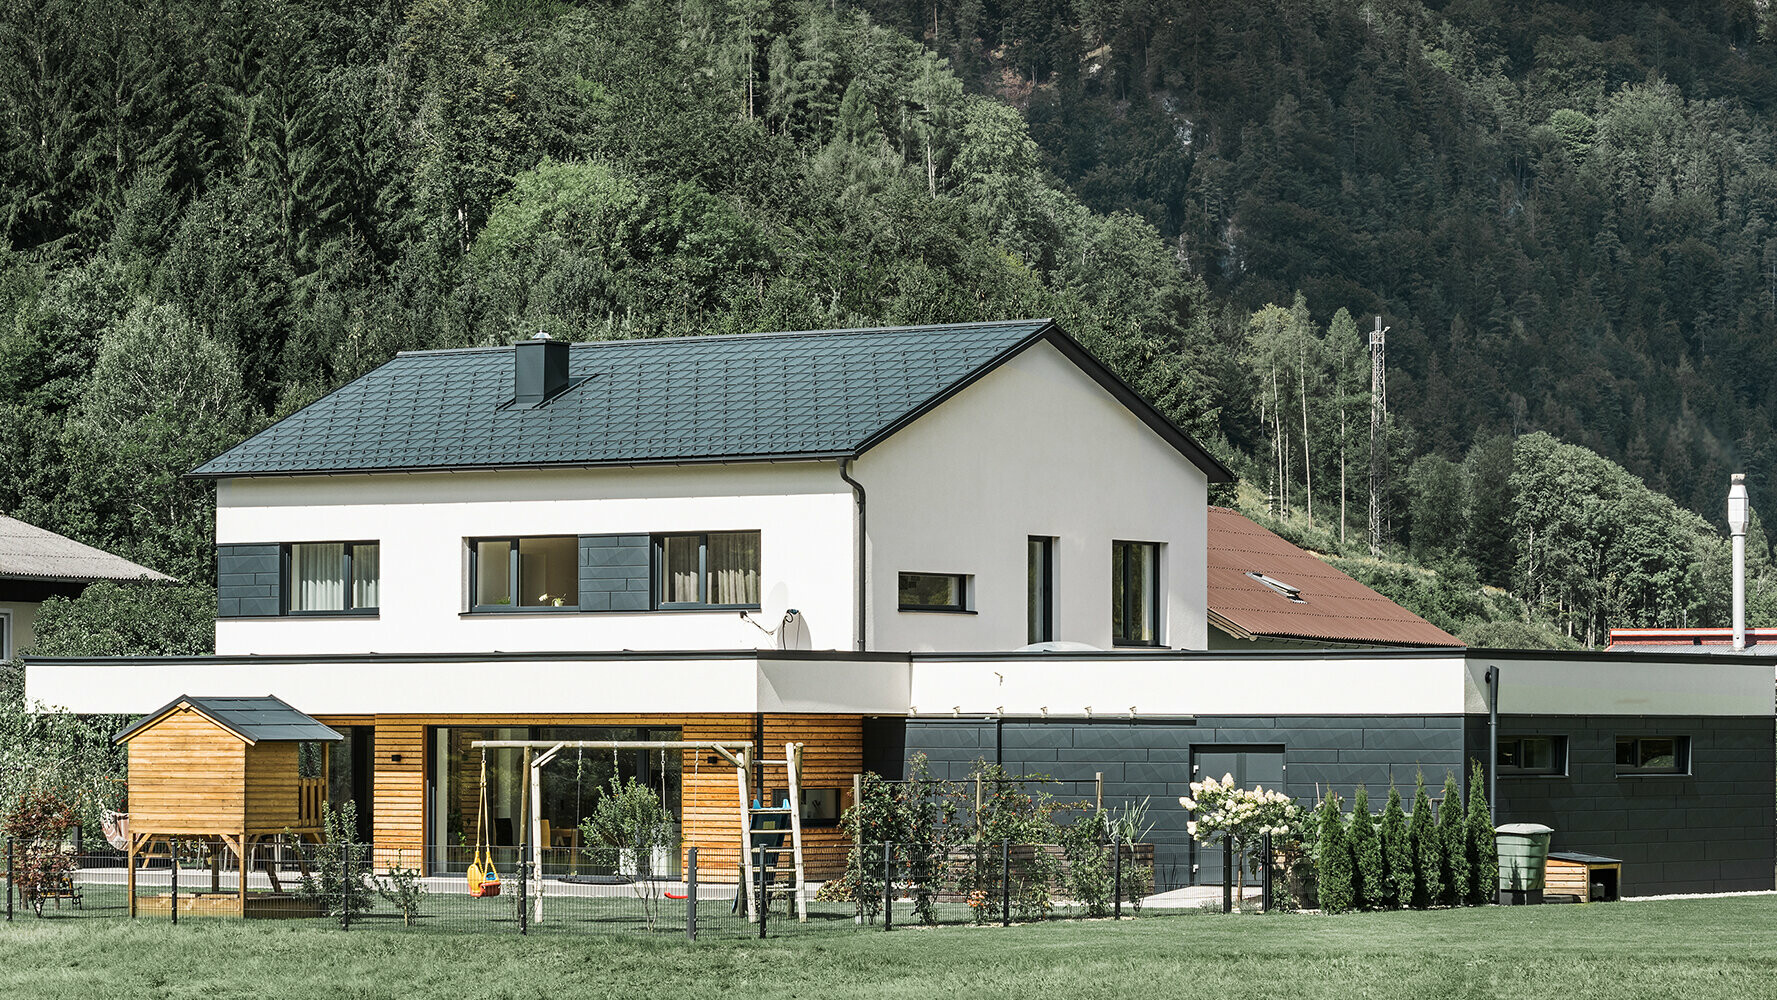 Einfamilienhaus Neubau mit Lärchenholz-Fassade in Kombination mit PREFA Siding.X in Anthrazit.